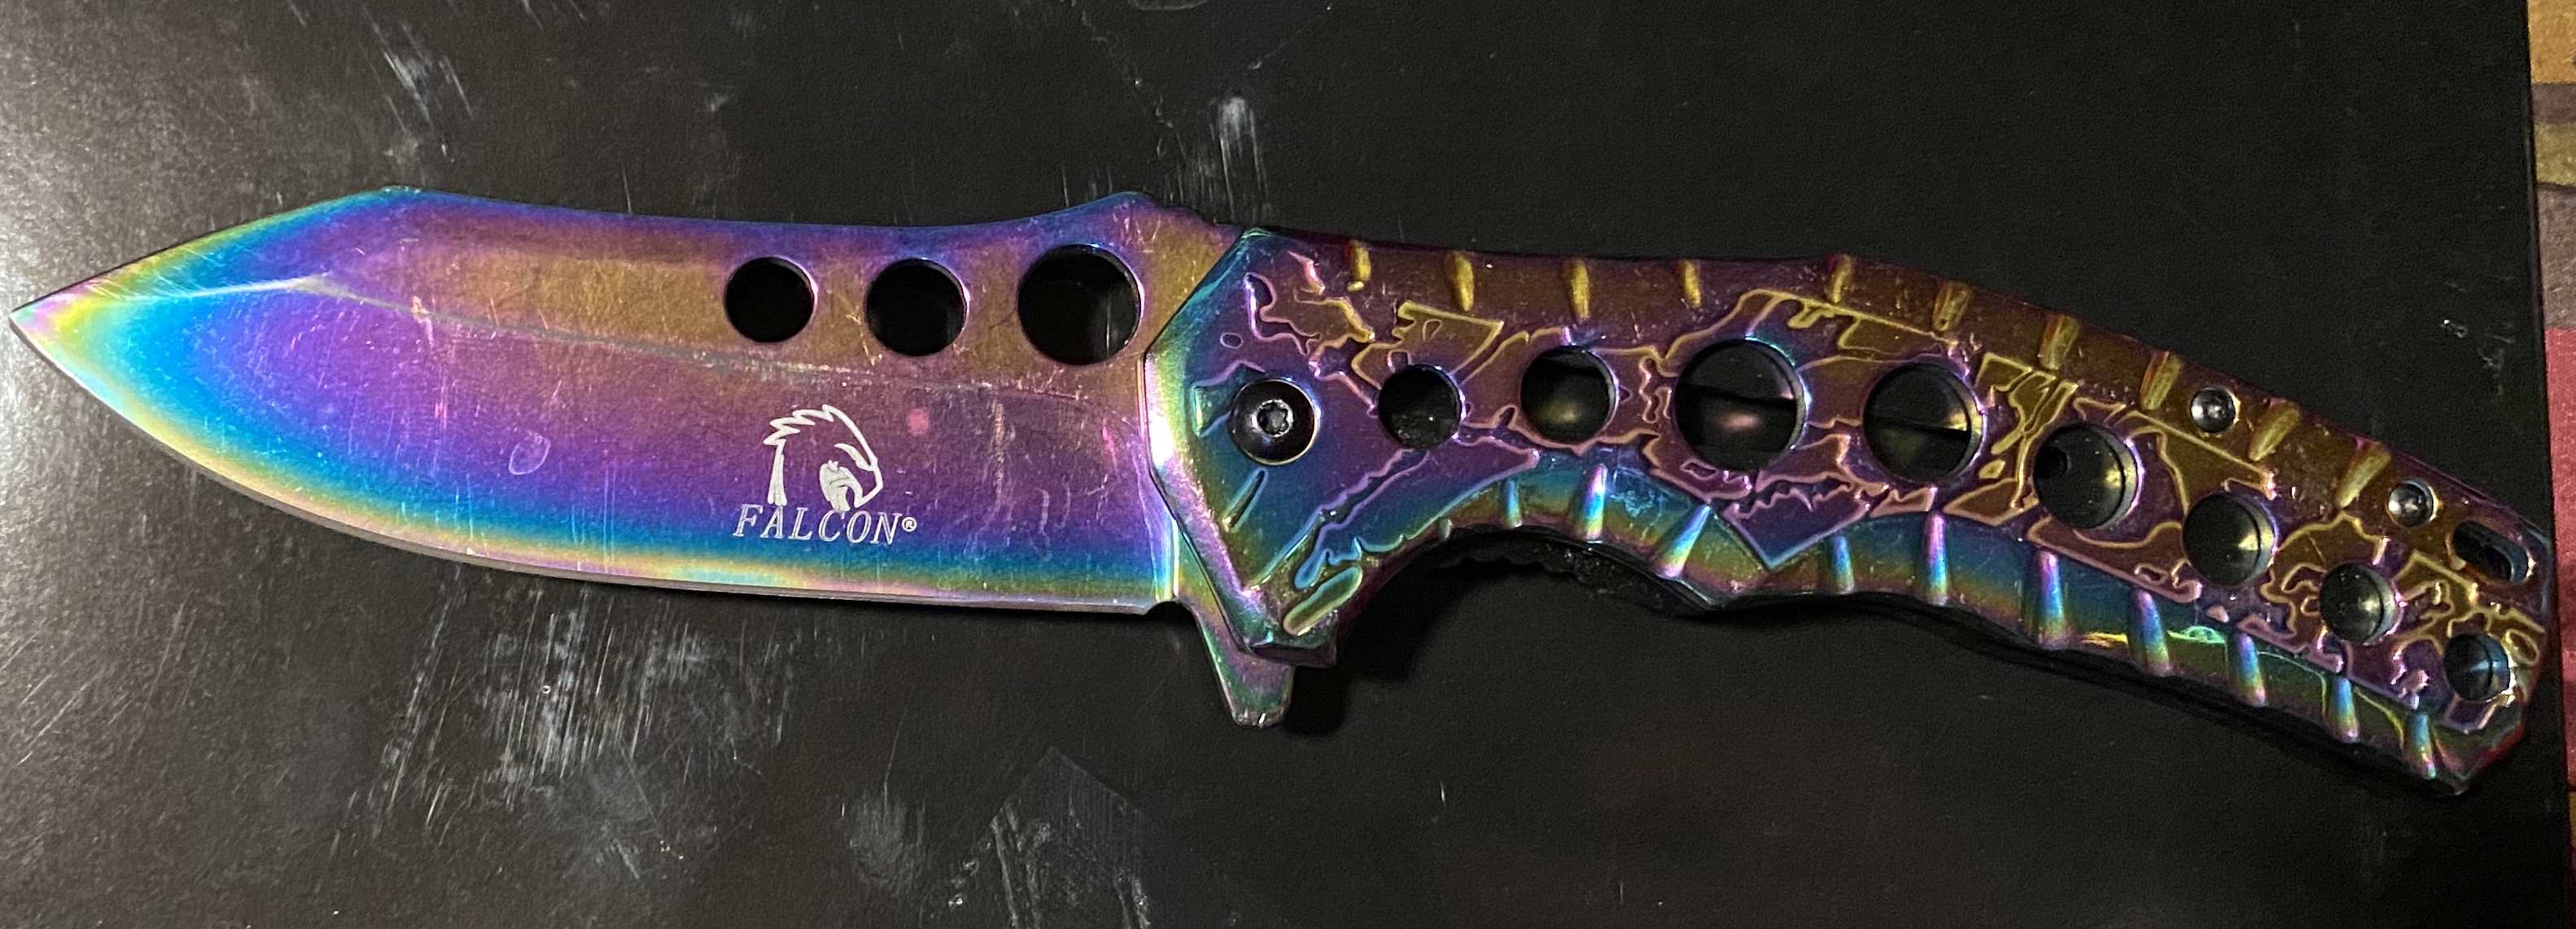 rainbow knife